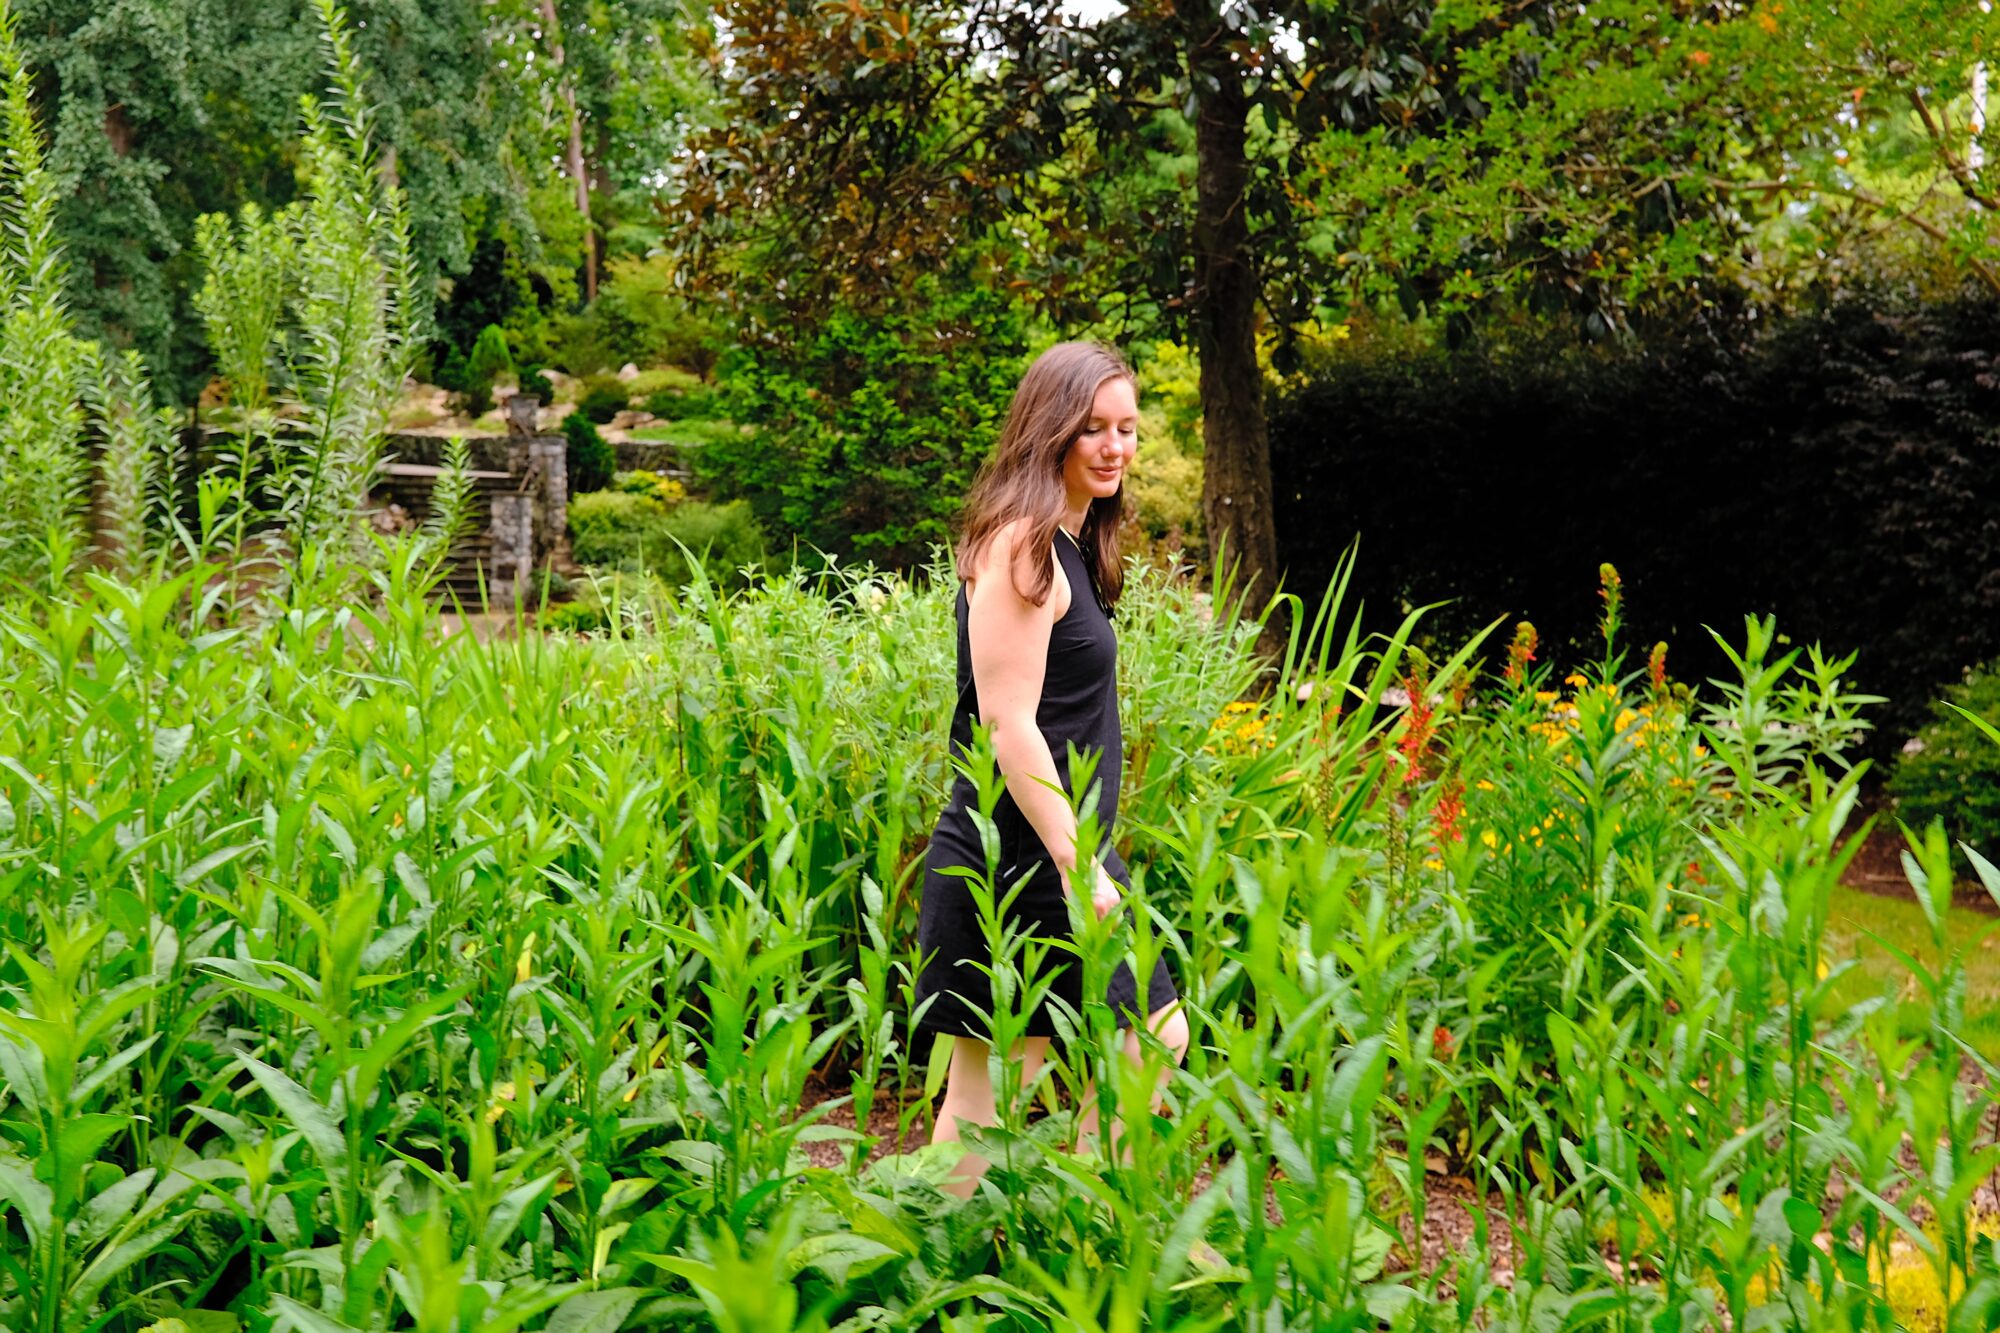 Alyssa walks through a garden in Greensboro